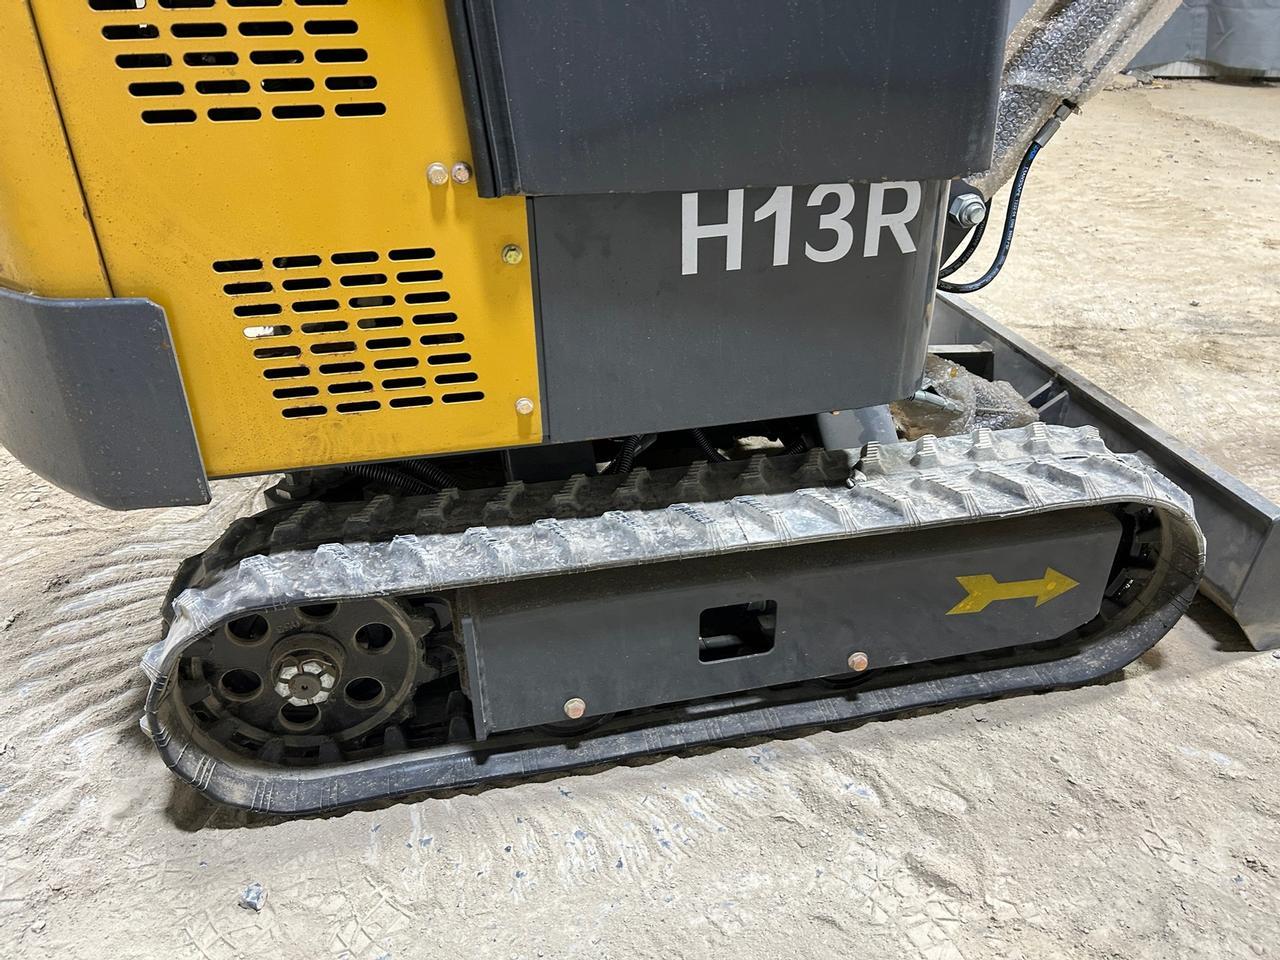 AGROTK H13R Mini Excavator